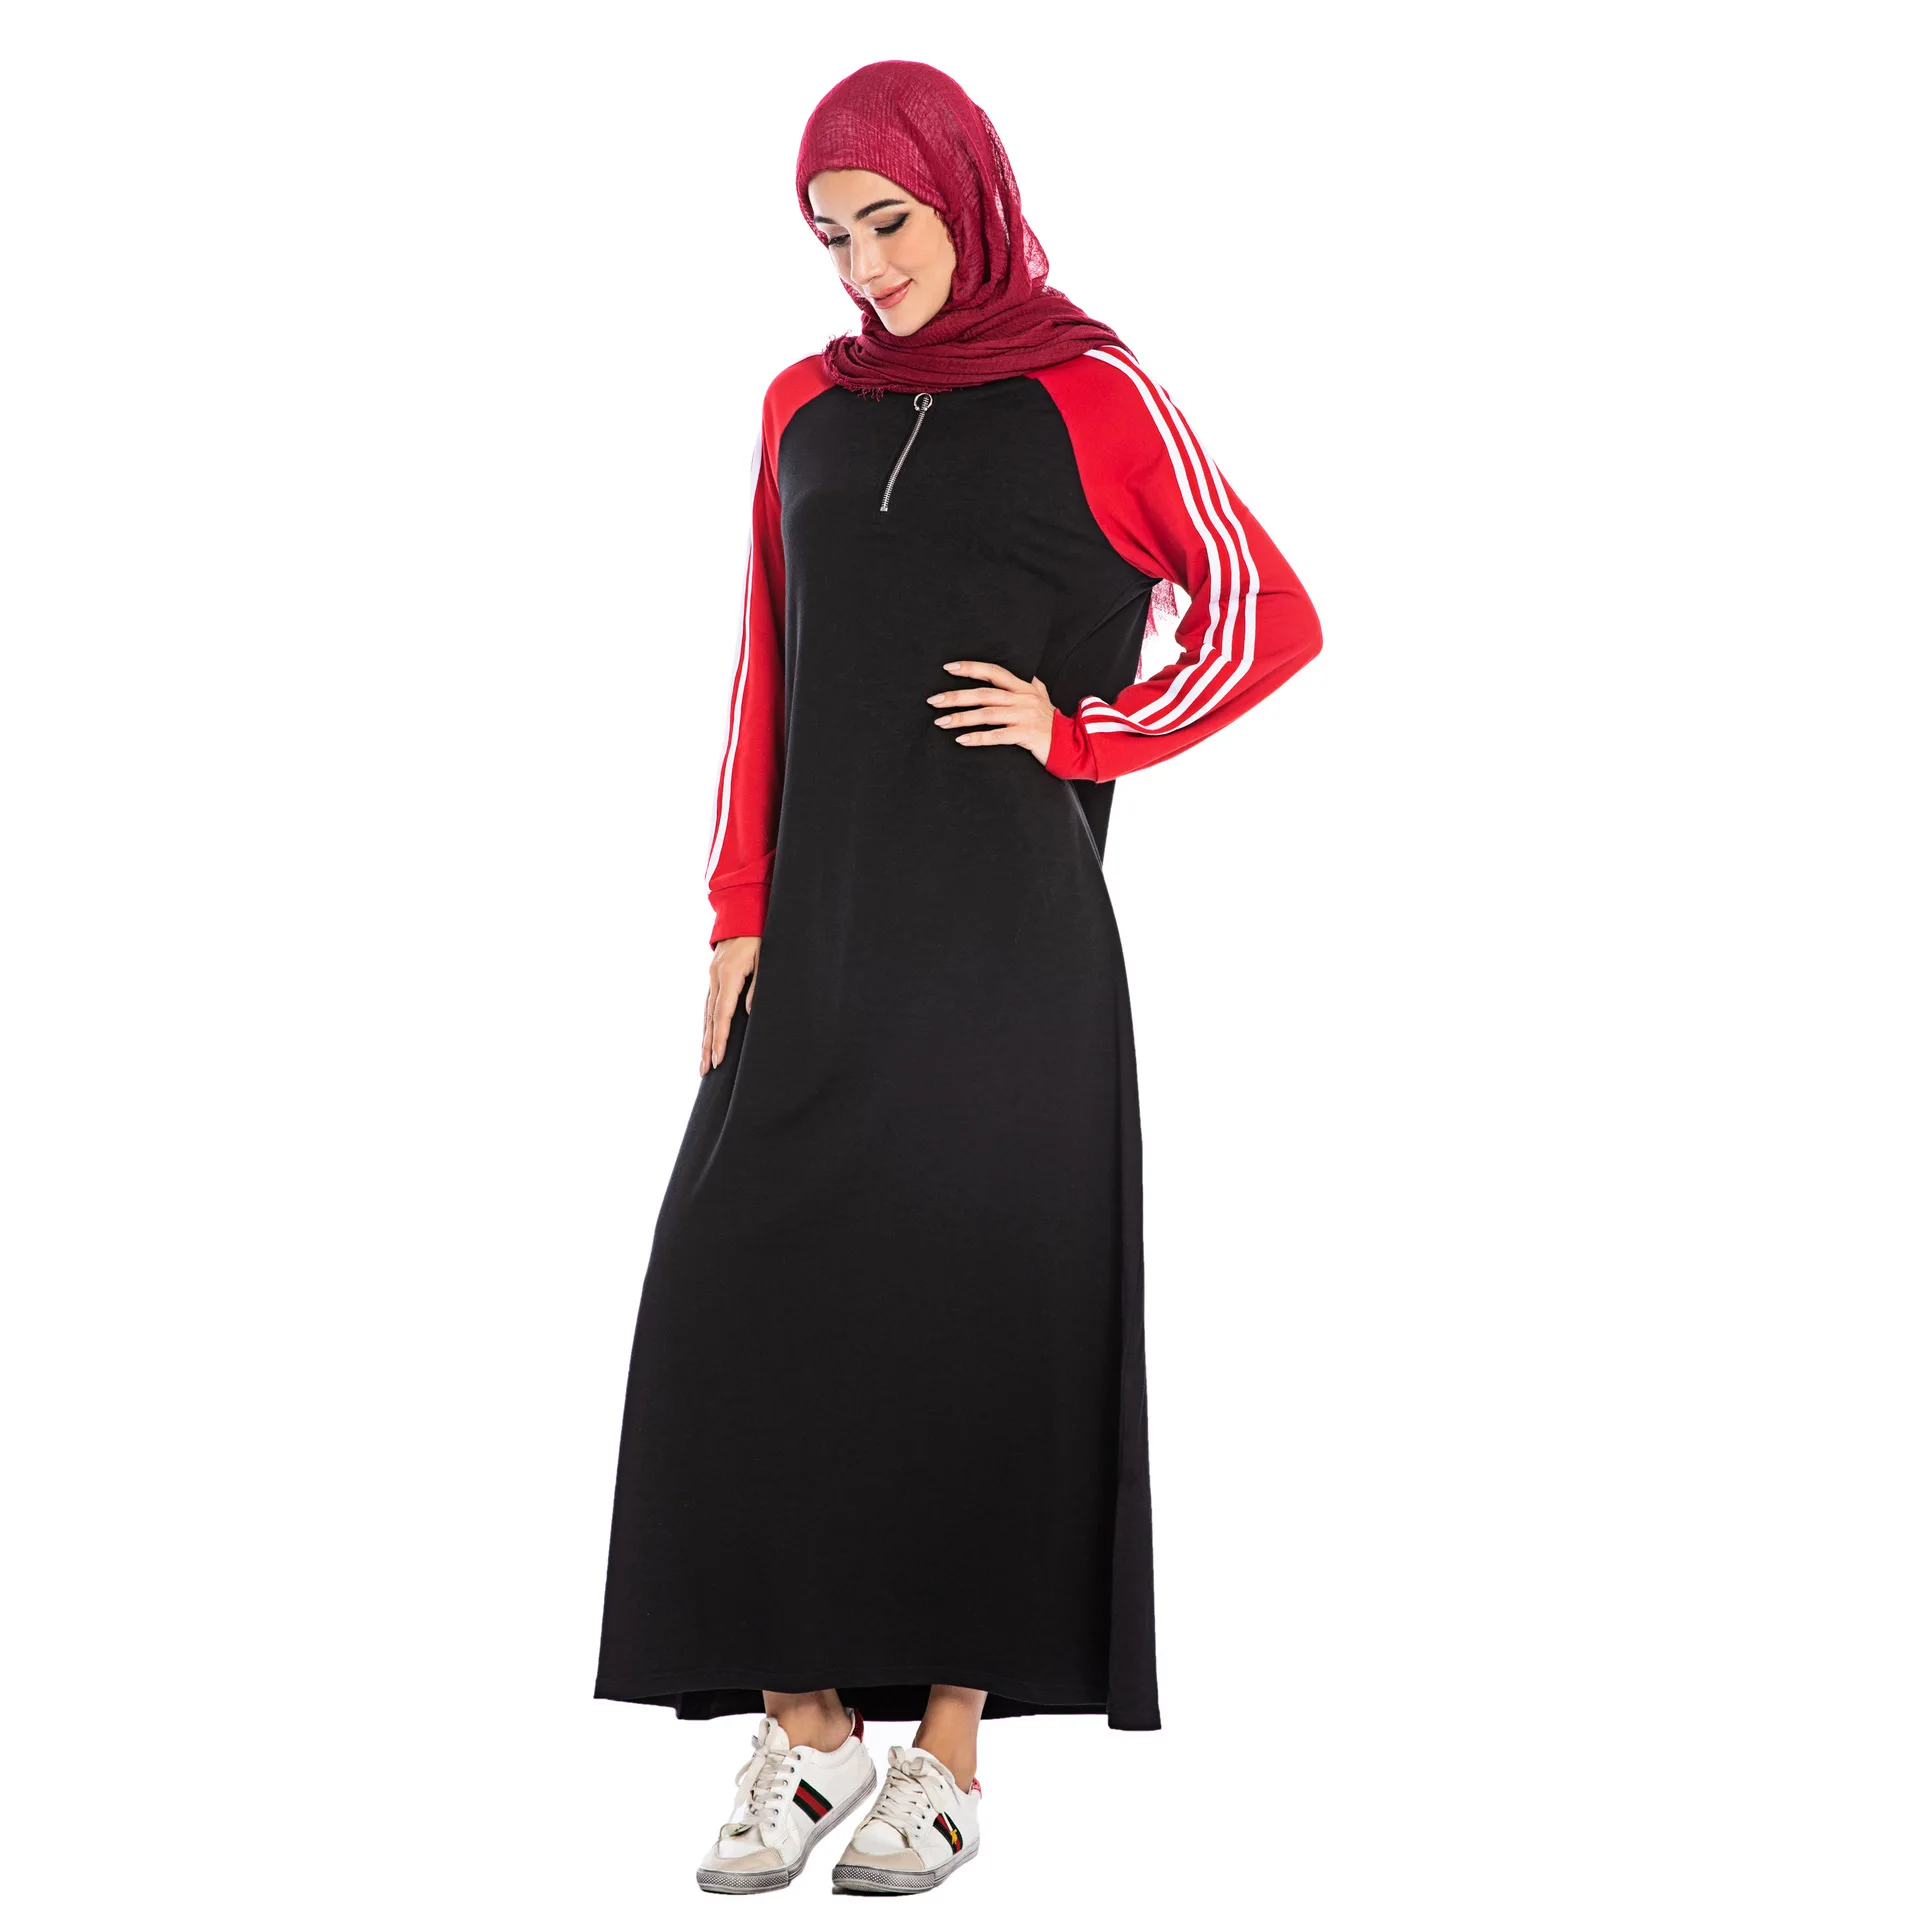 Осень Зима Дубай Повседневная абайя скромная модная мусульманская женская одежда халаты ислам Хлопок Черный Спорт большой макси размер платье кафтан